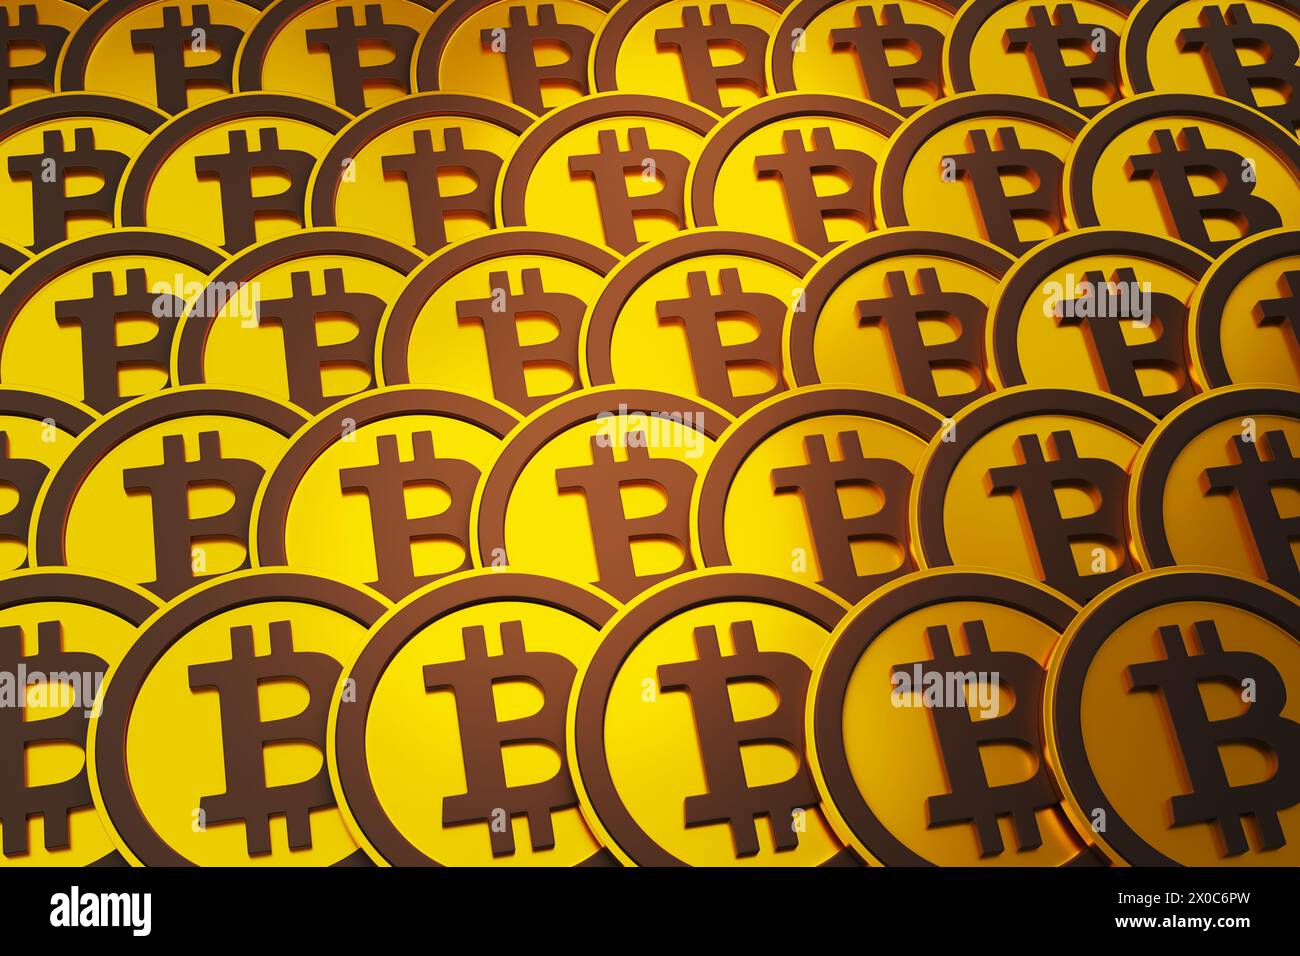 I bitcoin dorati ordinatamente disposti riga per fila riempivano completamente lo schermo. Illustrazione del concetto di bitcoin, criptovalute decentralizzate e blockchain Foto Stock